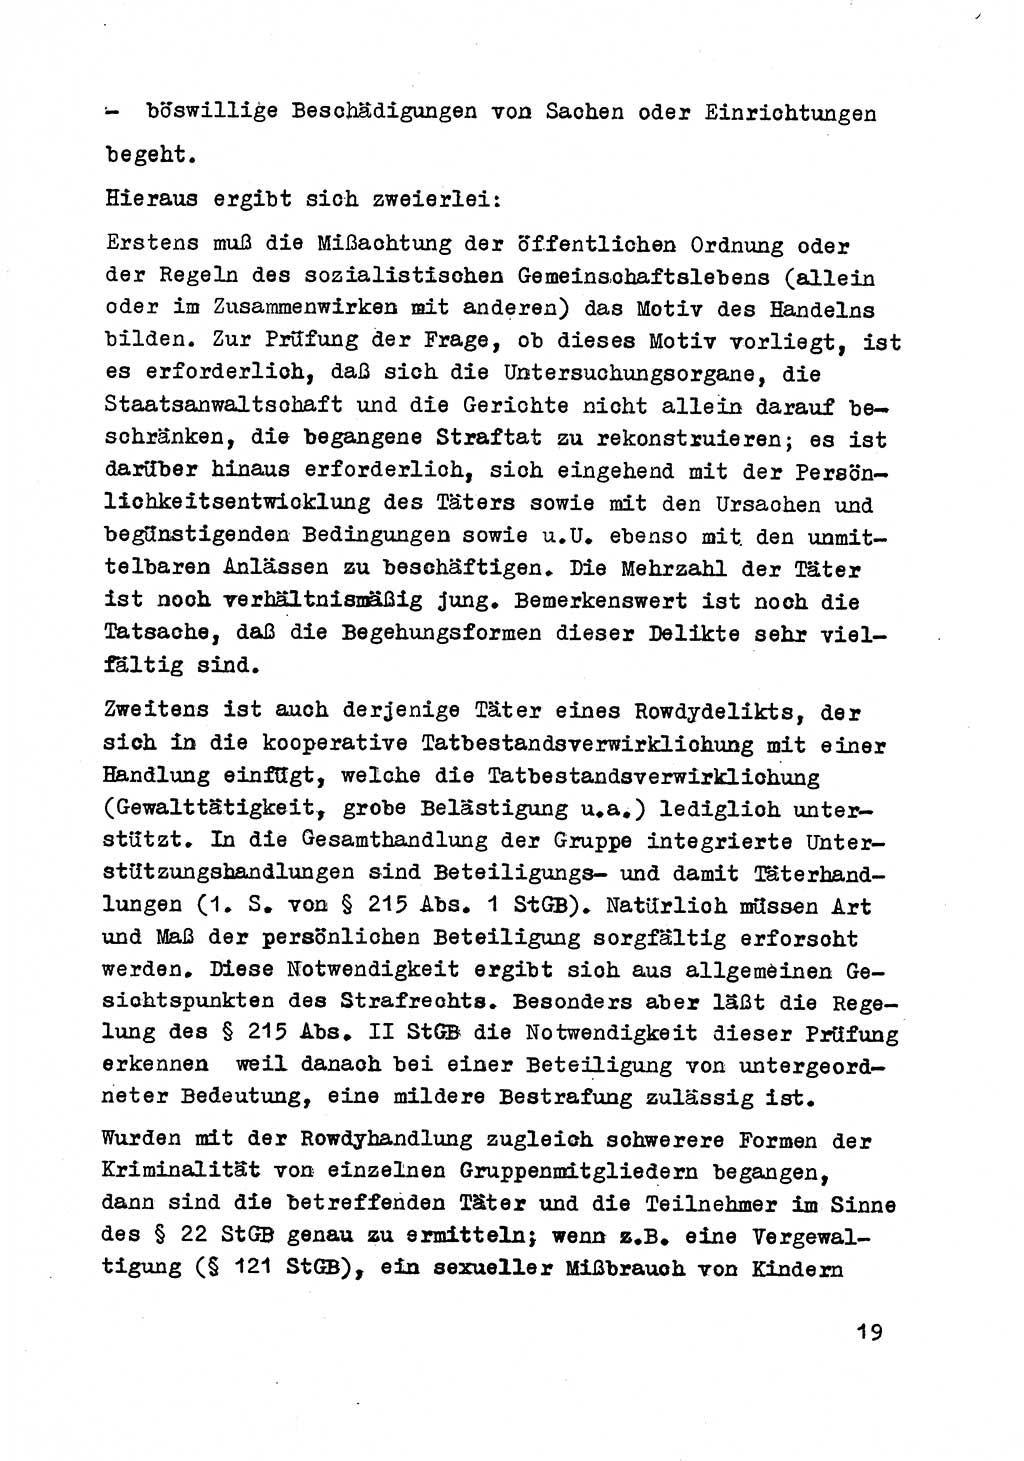 Strafrecht der DDR (Deutsche Demokratische Republik), Besonderer Teil, Lehrmaterial, Heft 8 1970, Seite 19 (Strafr. DDR BT Lehrmat. H. 8 1970, S. 19)